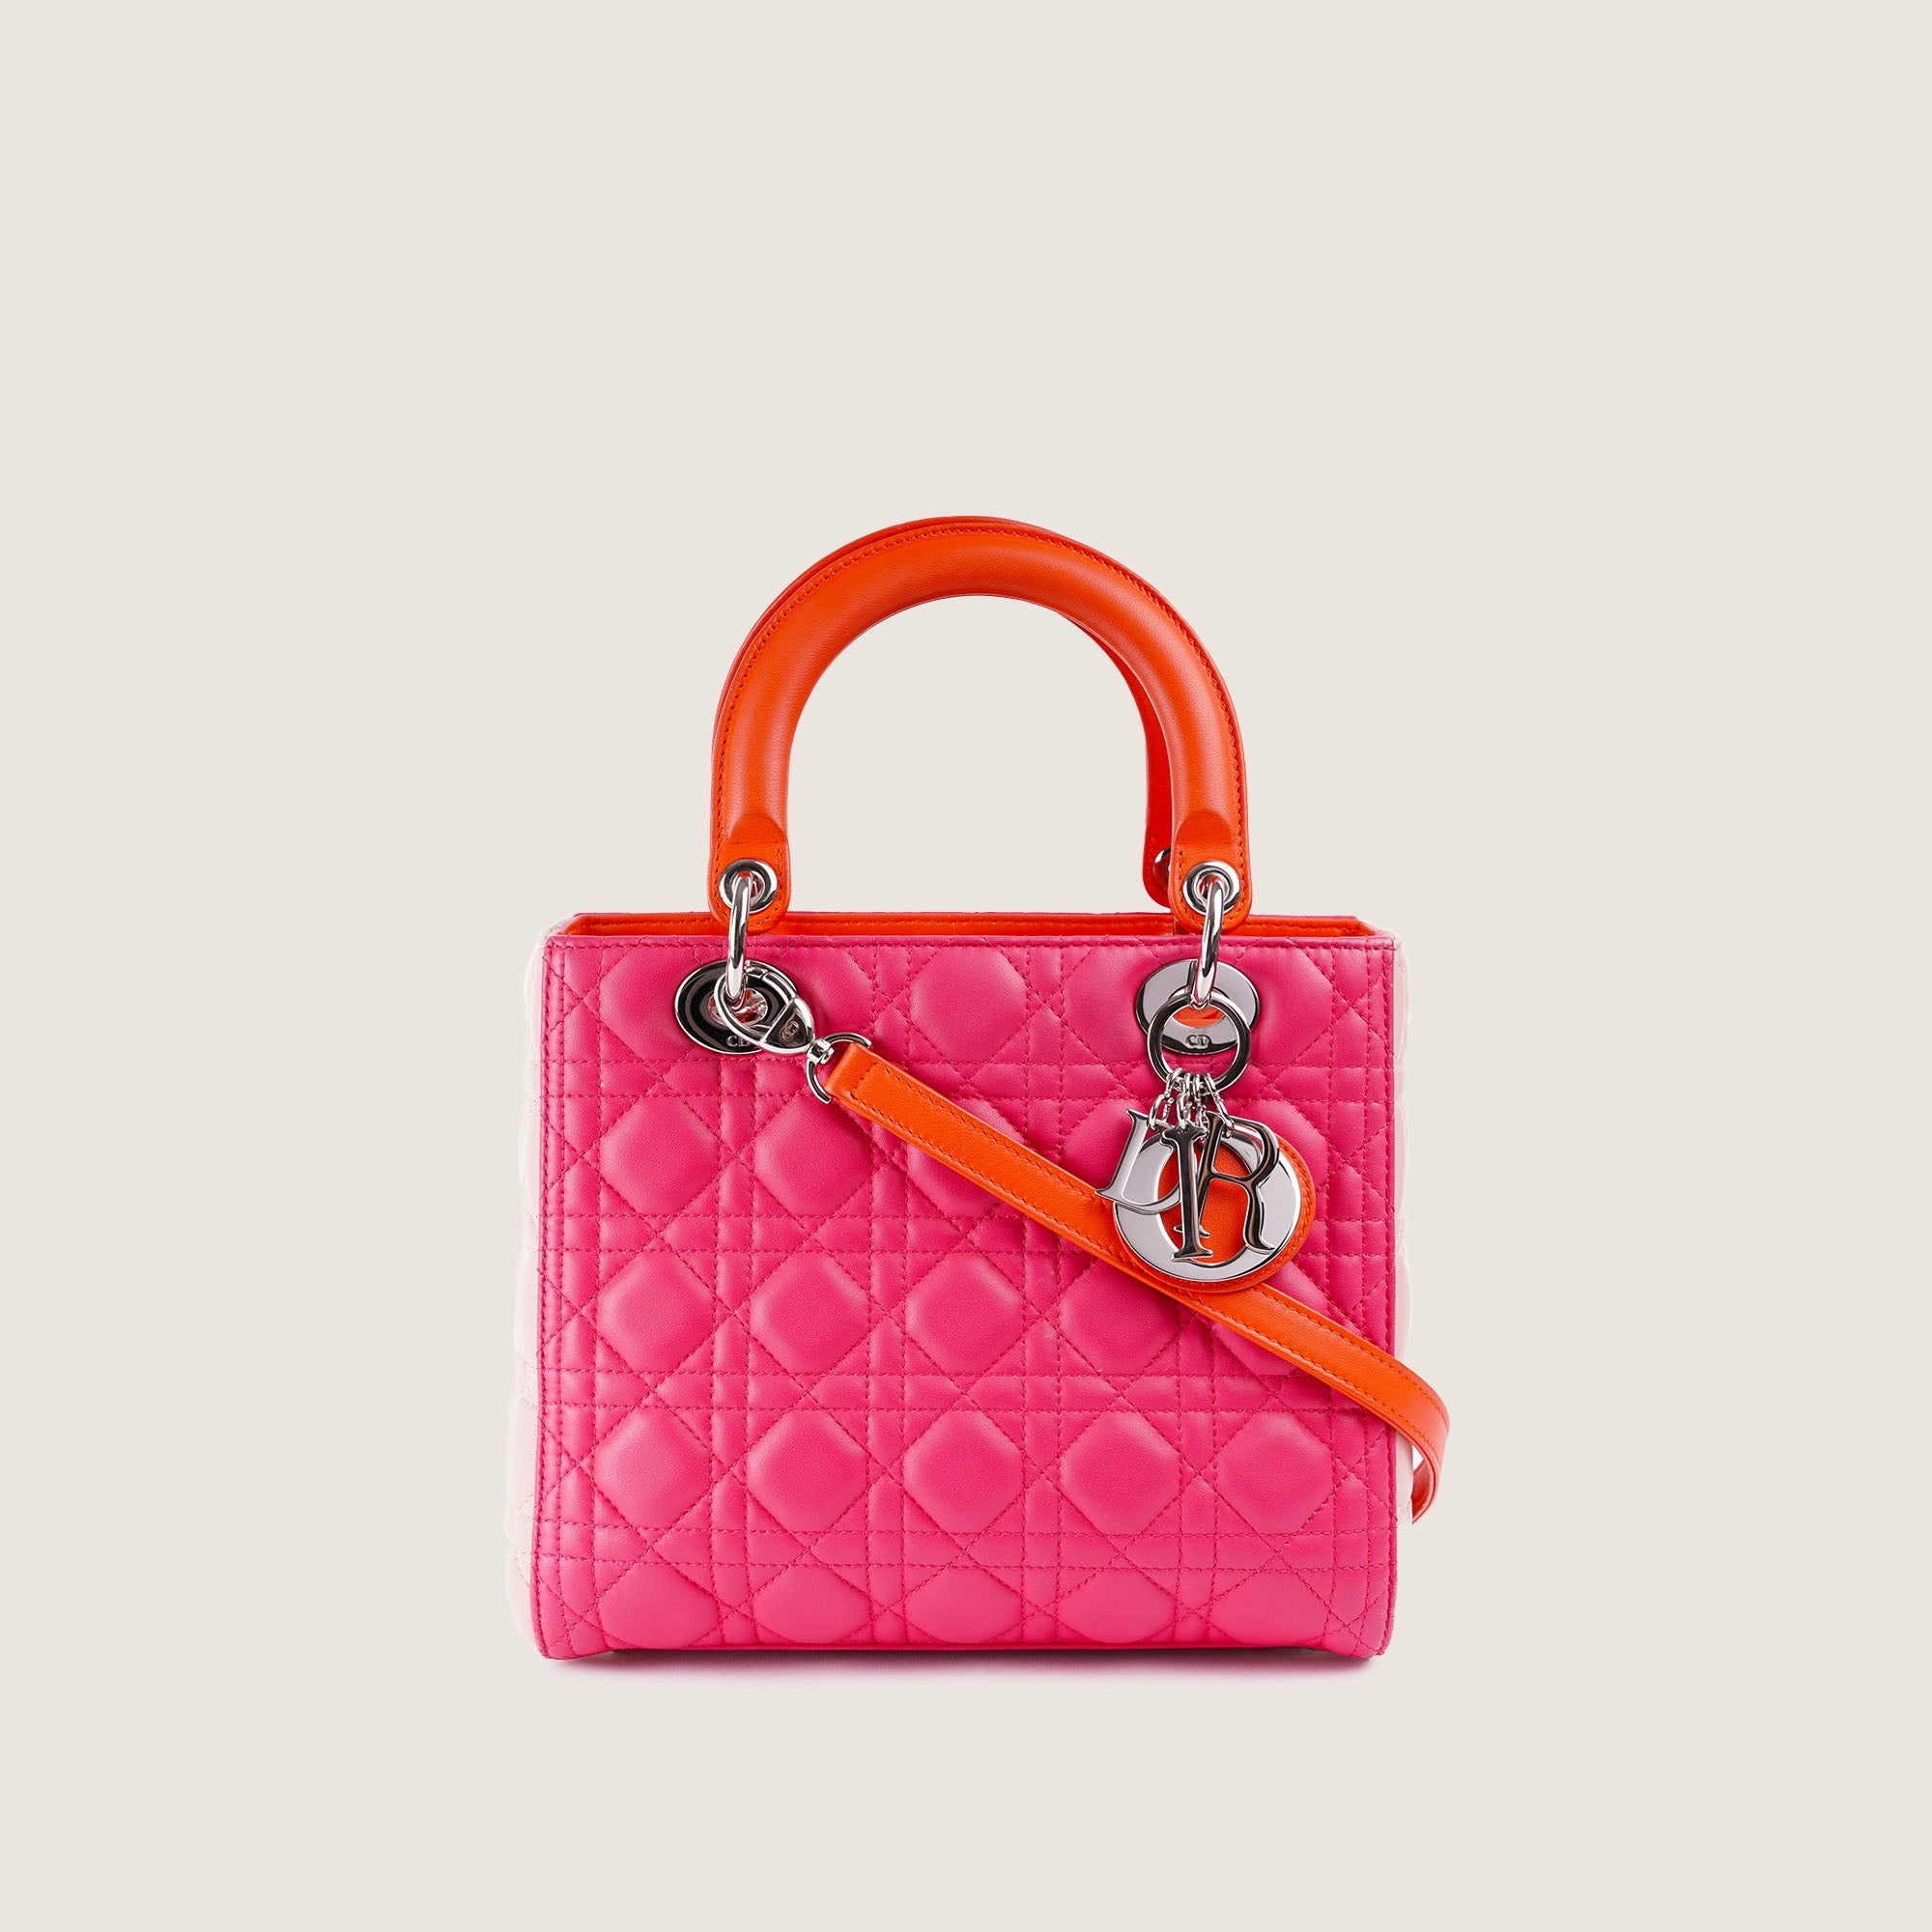 Lady Dior Medium Tricolor Handbag - CHRISTIAN DIOR - Affordable Luxury